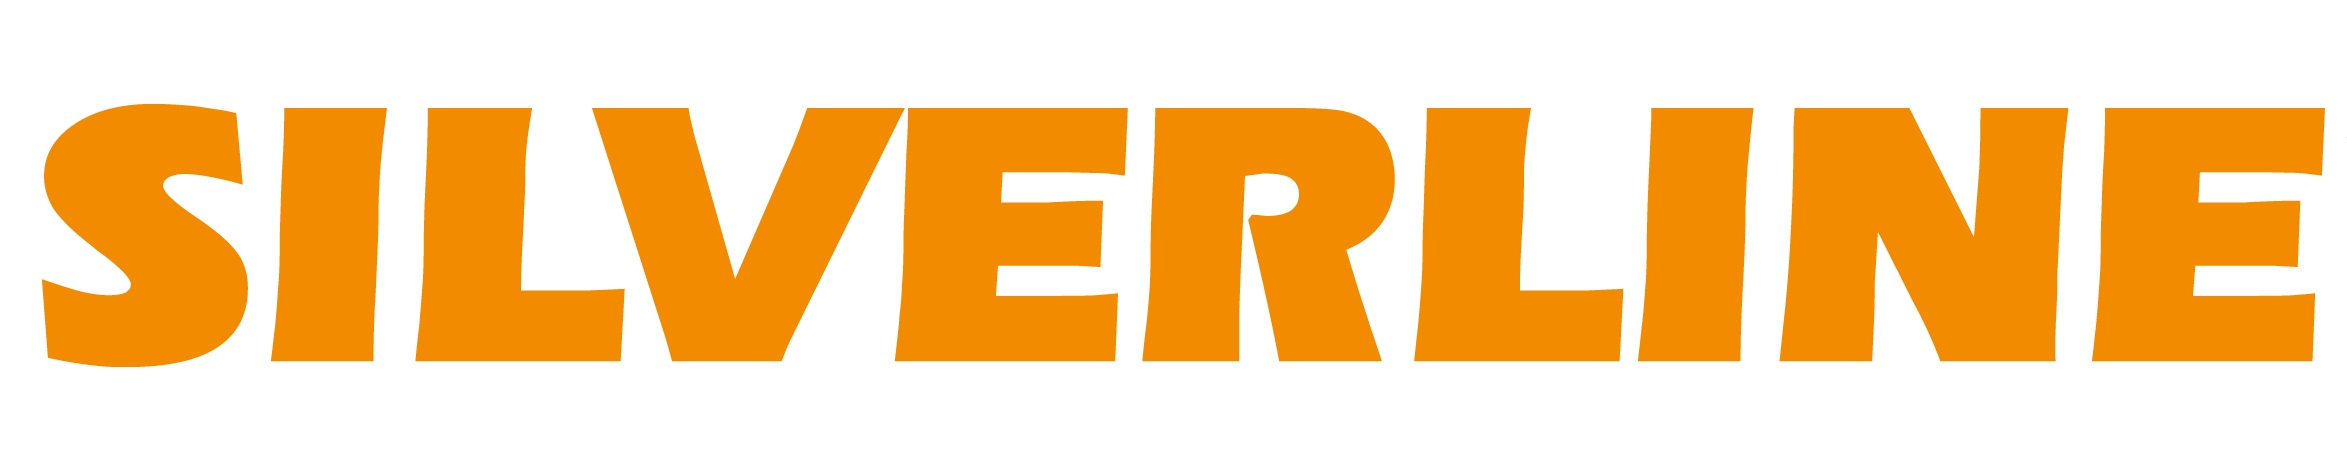 Logo-Silverline-orange